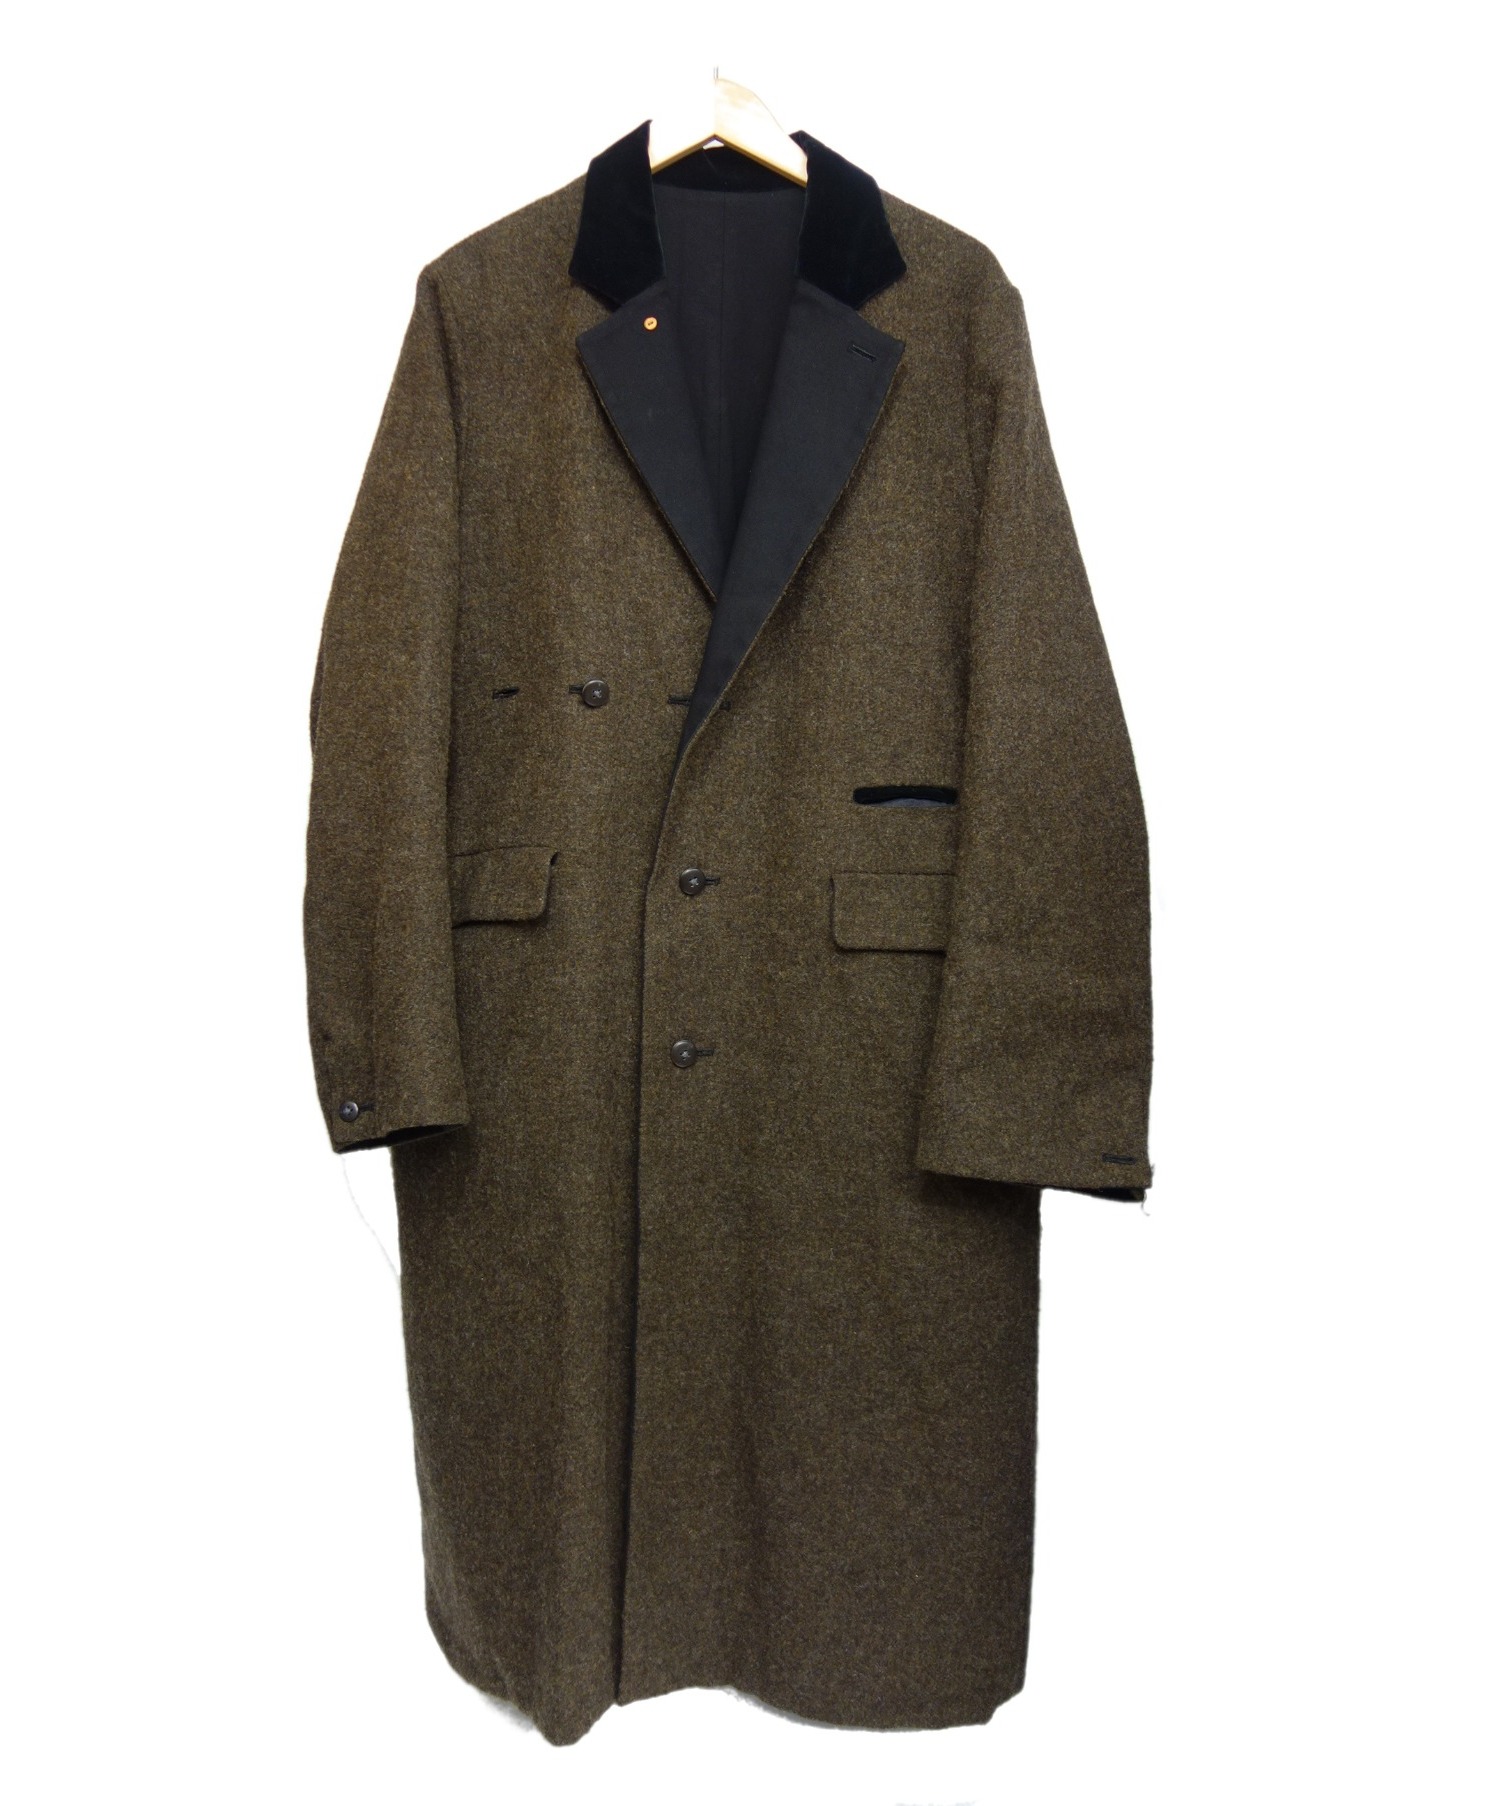 SUNSEA British Wool Reversible Coat